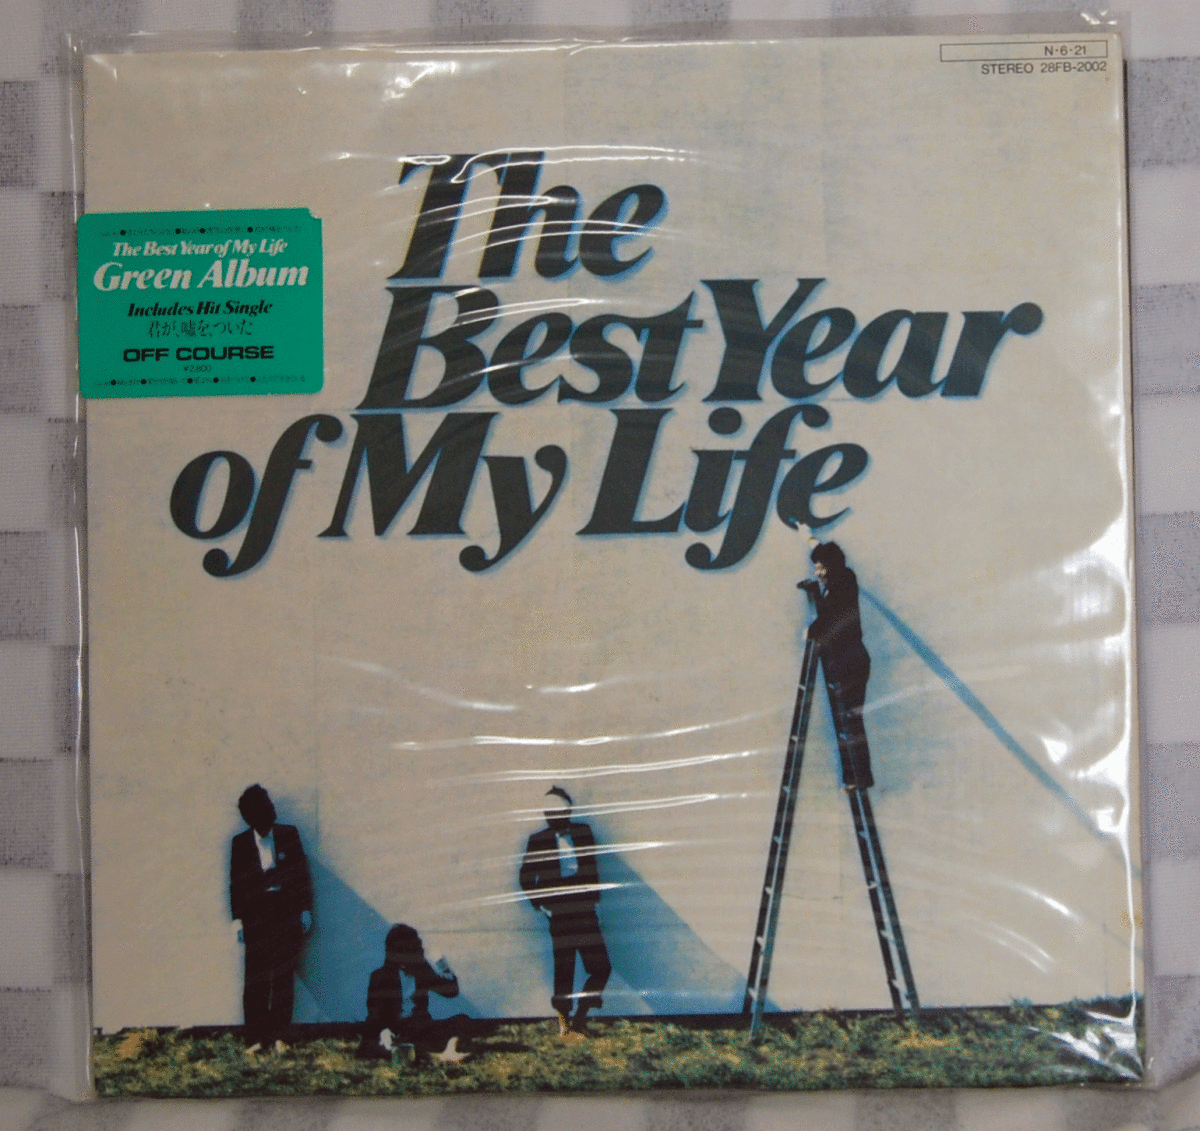 Выключенный курс/лучший год в моей жизни/28FB-2002/LP Records